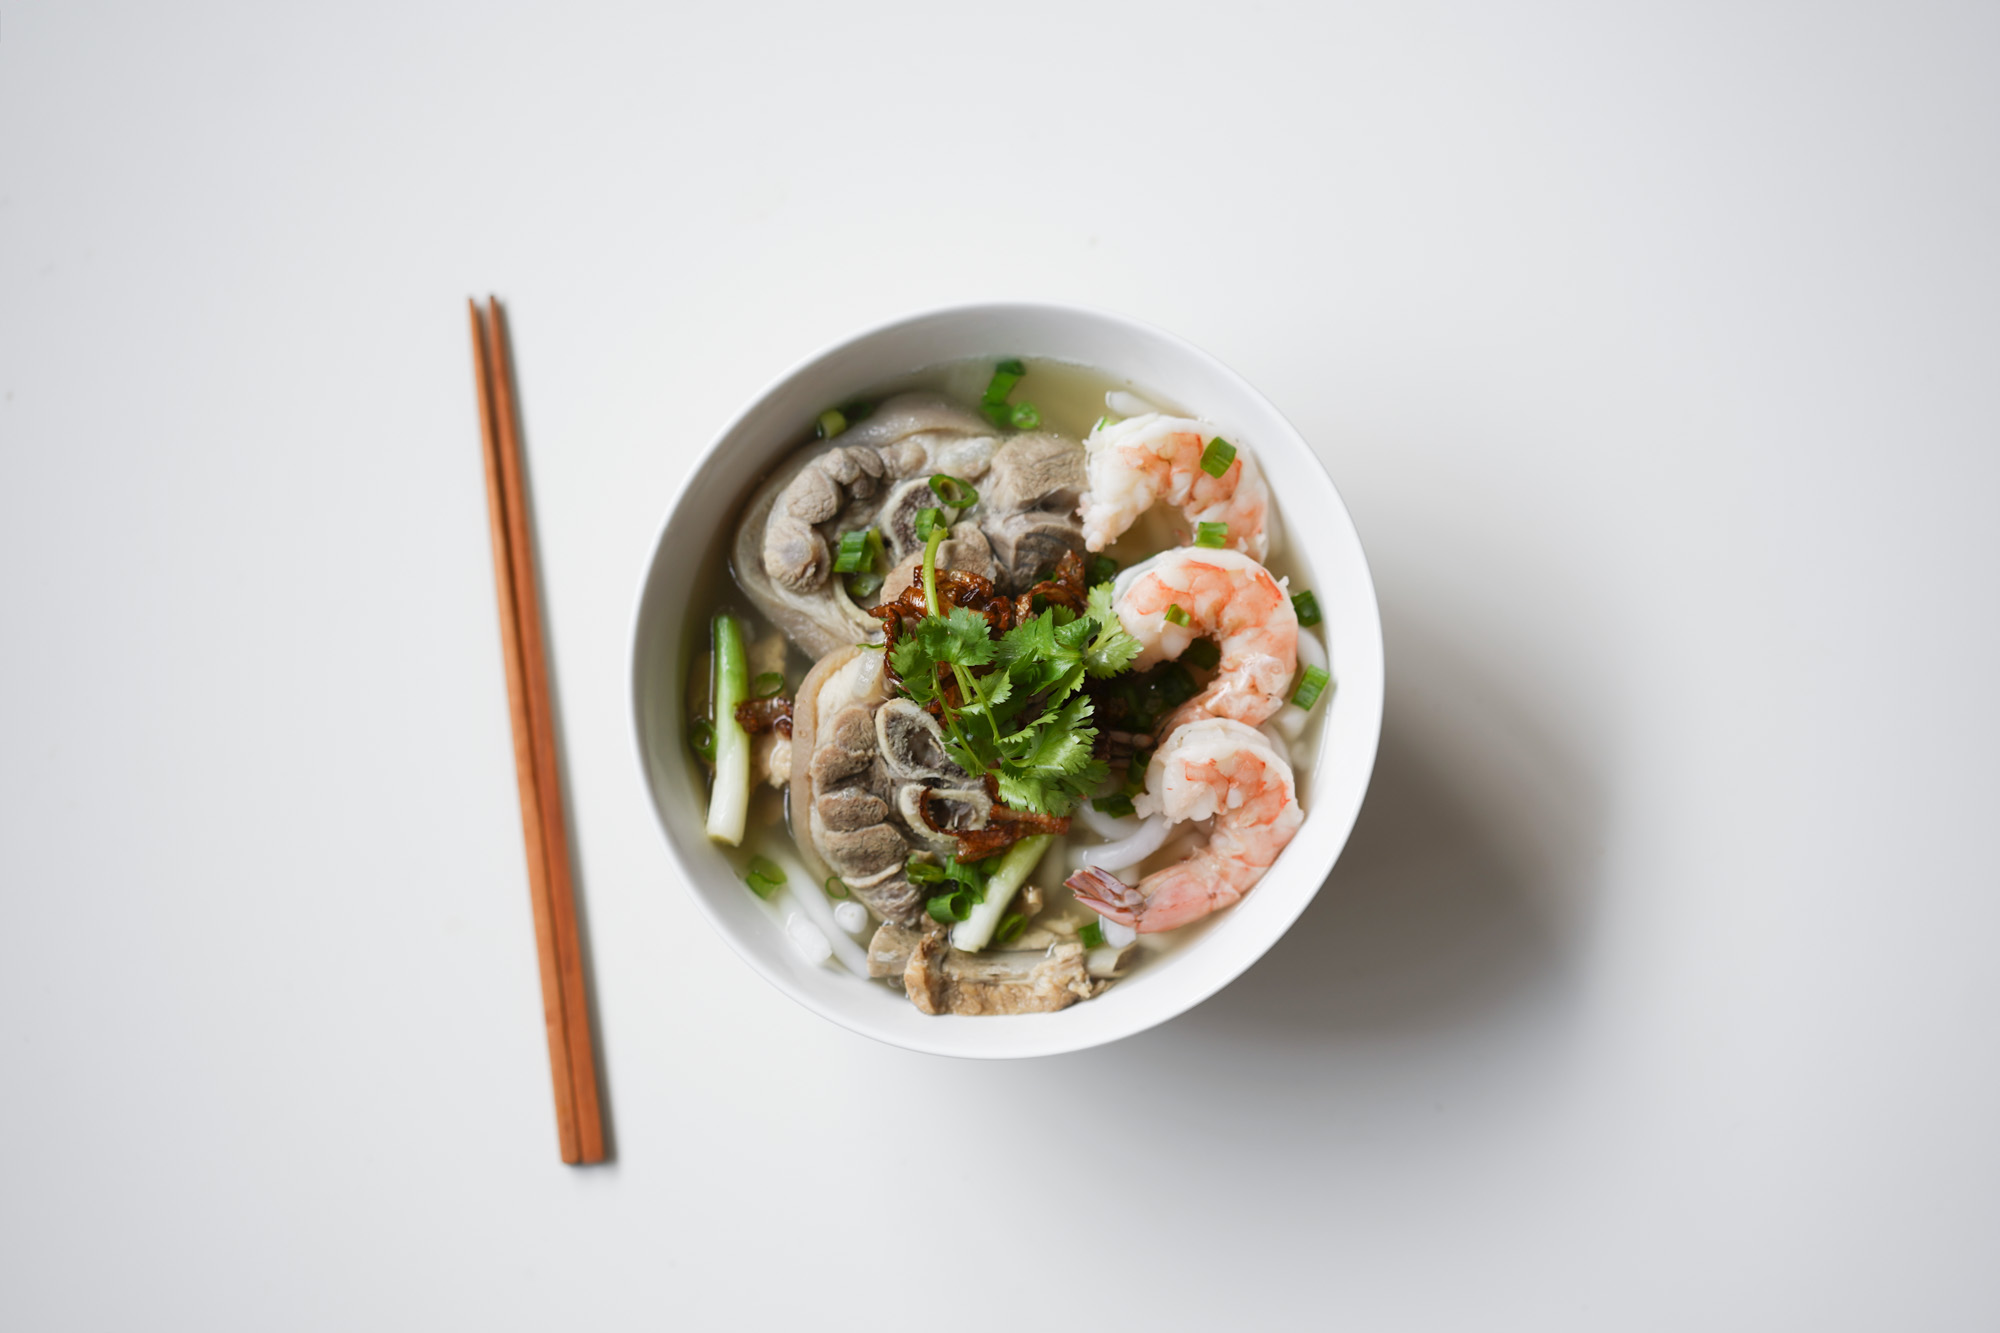 banh canh soup w pork hocks, shrimp